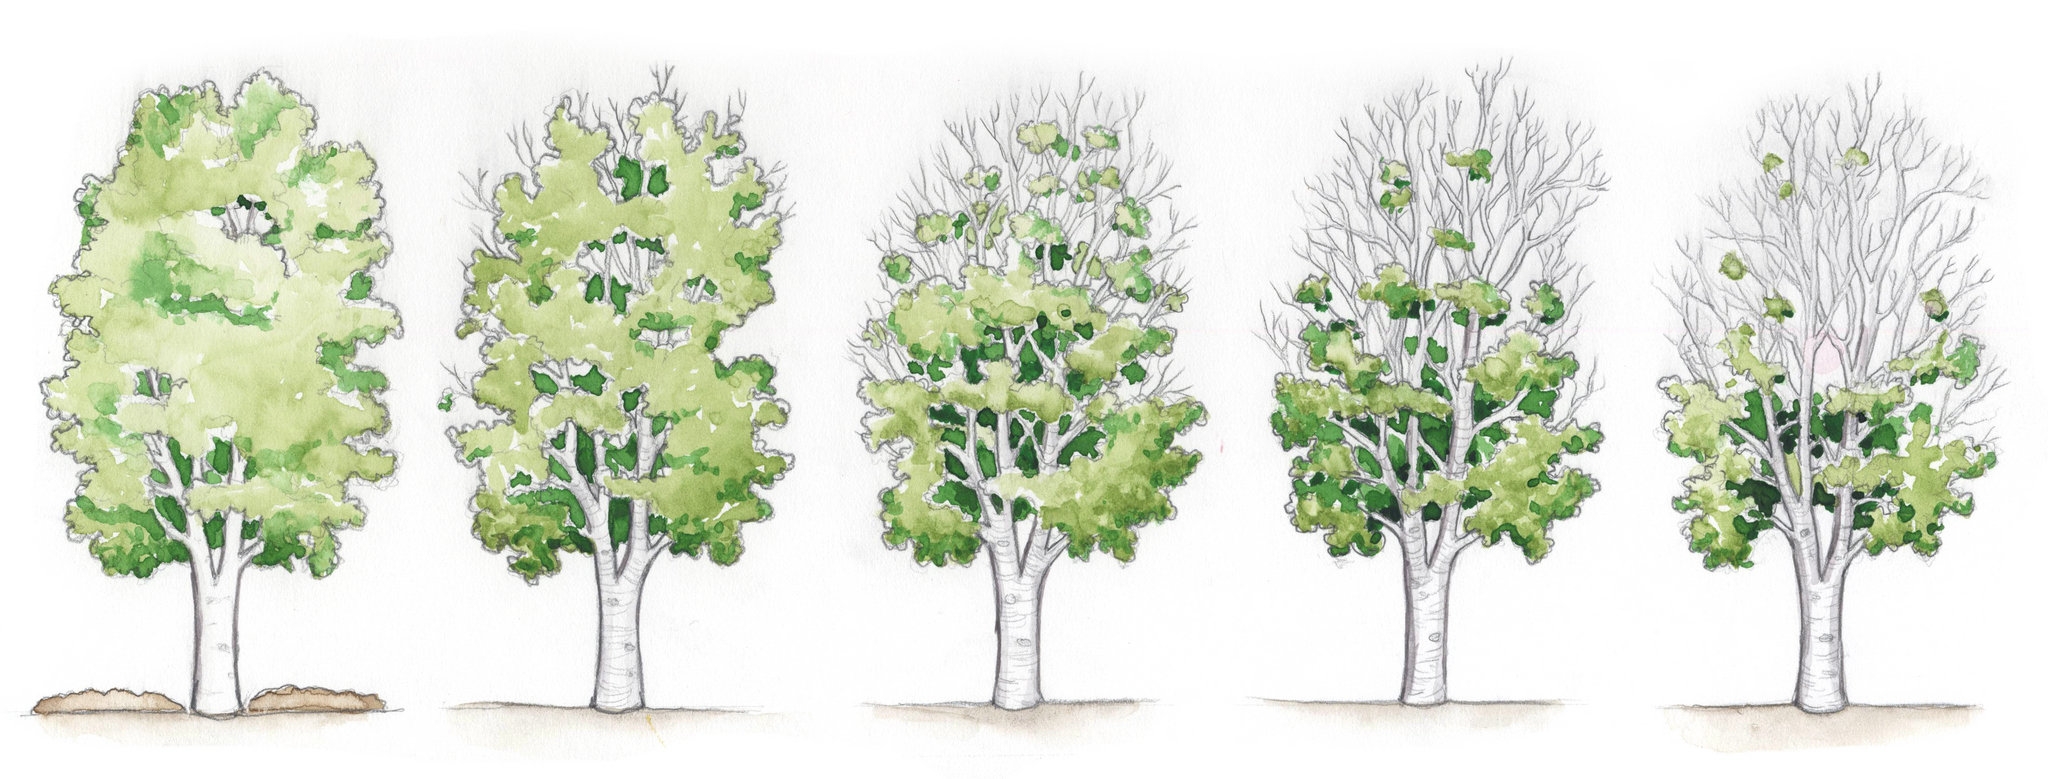 Две группы деревьев. Береза рисунок. Дерево группа березы. Береза в Разное время года. Рисование берёза в Разное время года.